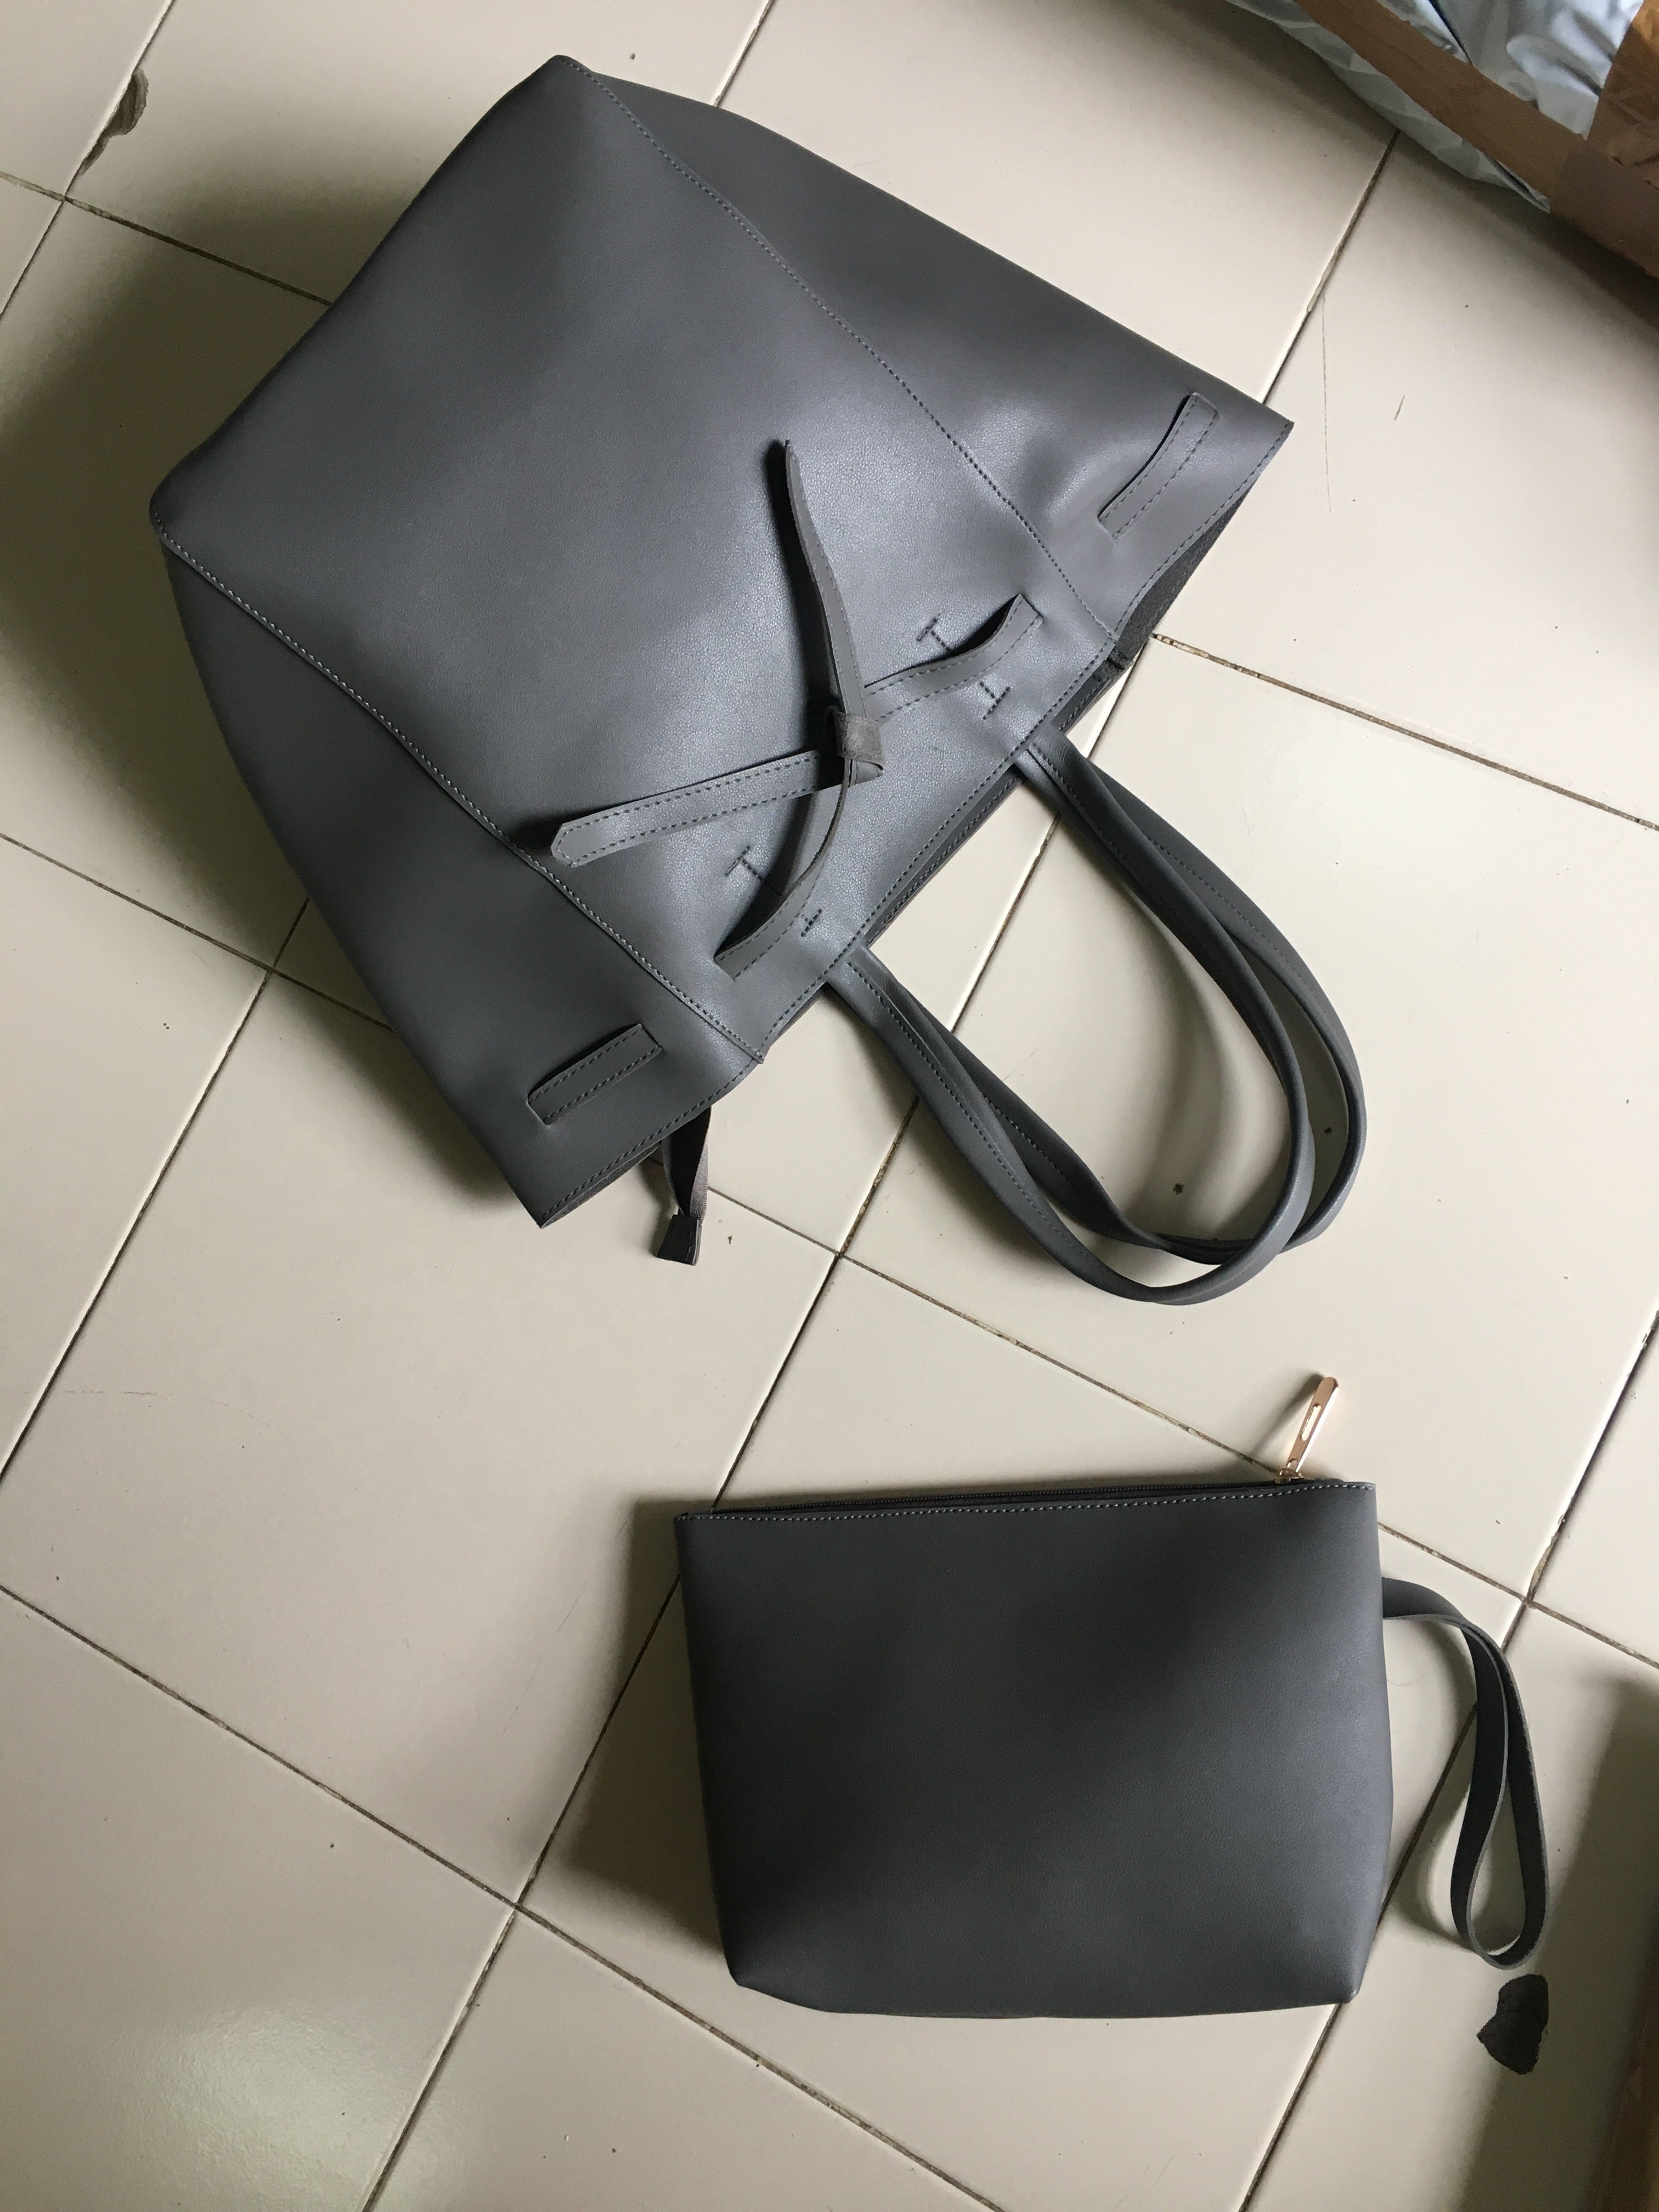 fcity.in - Women Latest Handbag Big Size Stylish Folding Bag Large Capacity  For